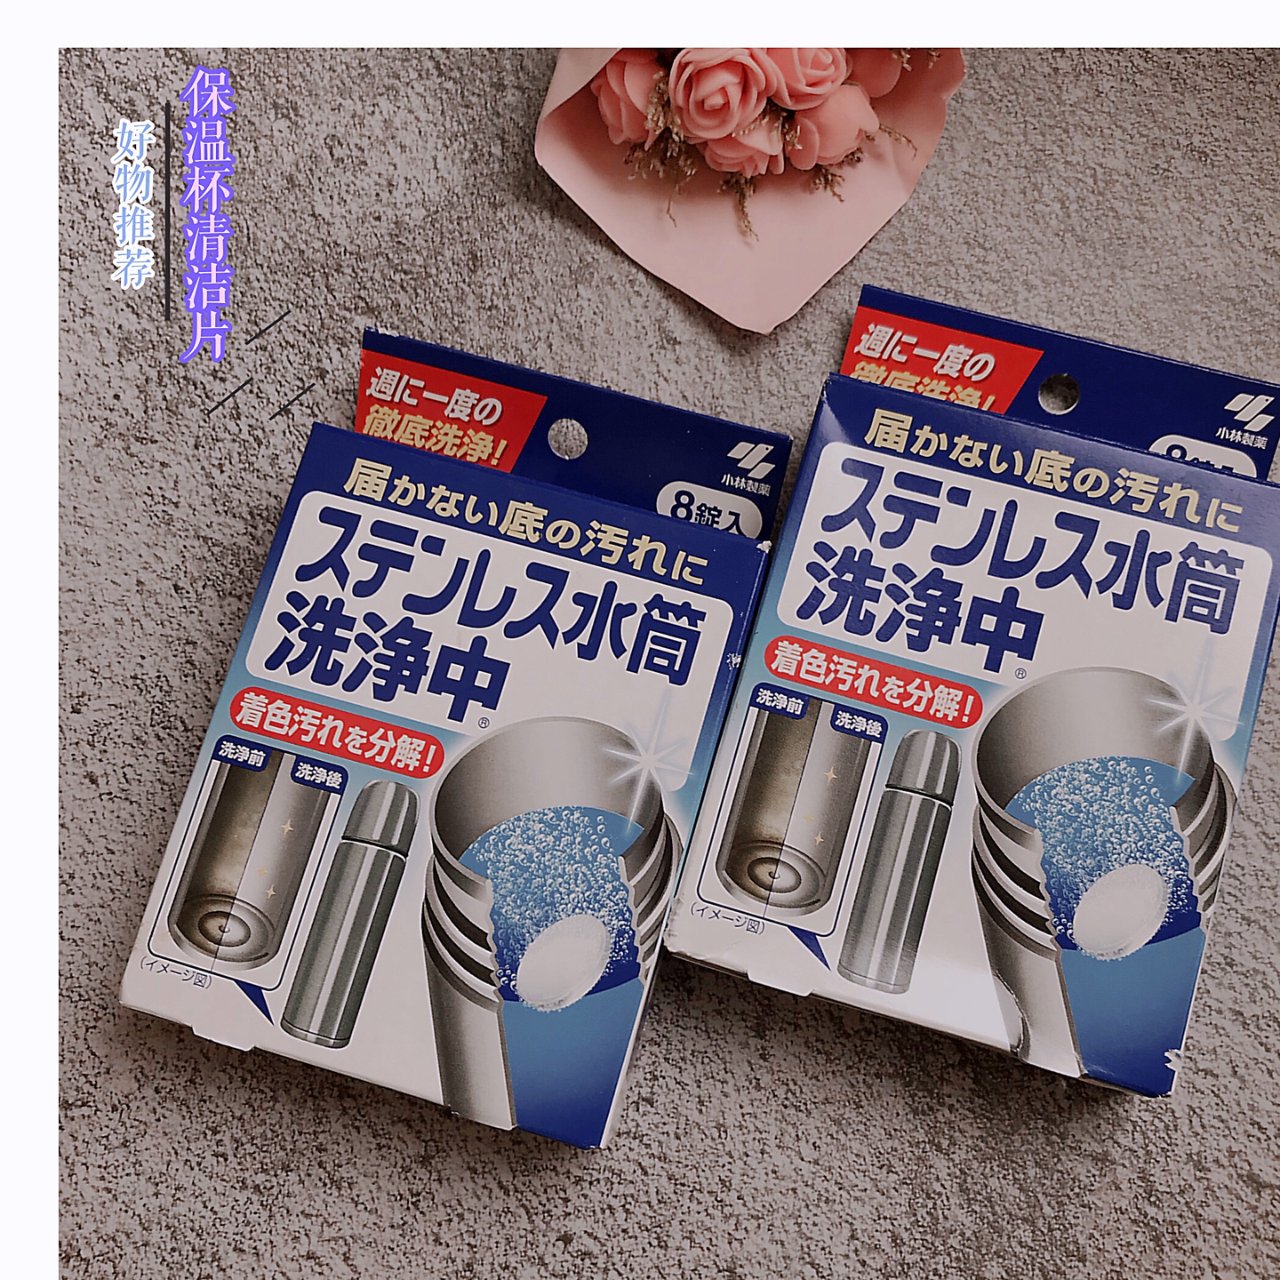 日本ZOJIRUSHI象印 电热水瓶专用清洗剂 清洁水垢 4包入 120g - 